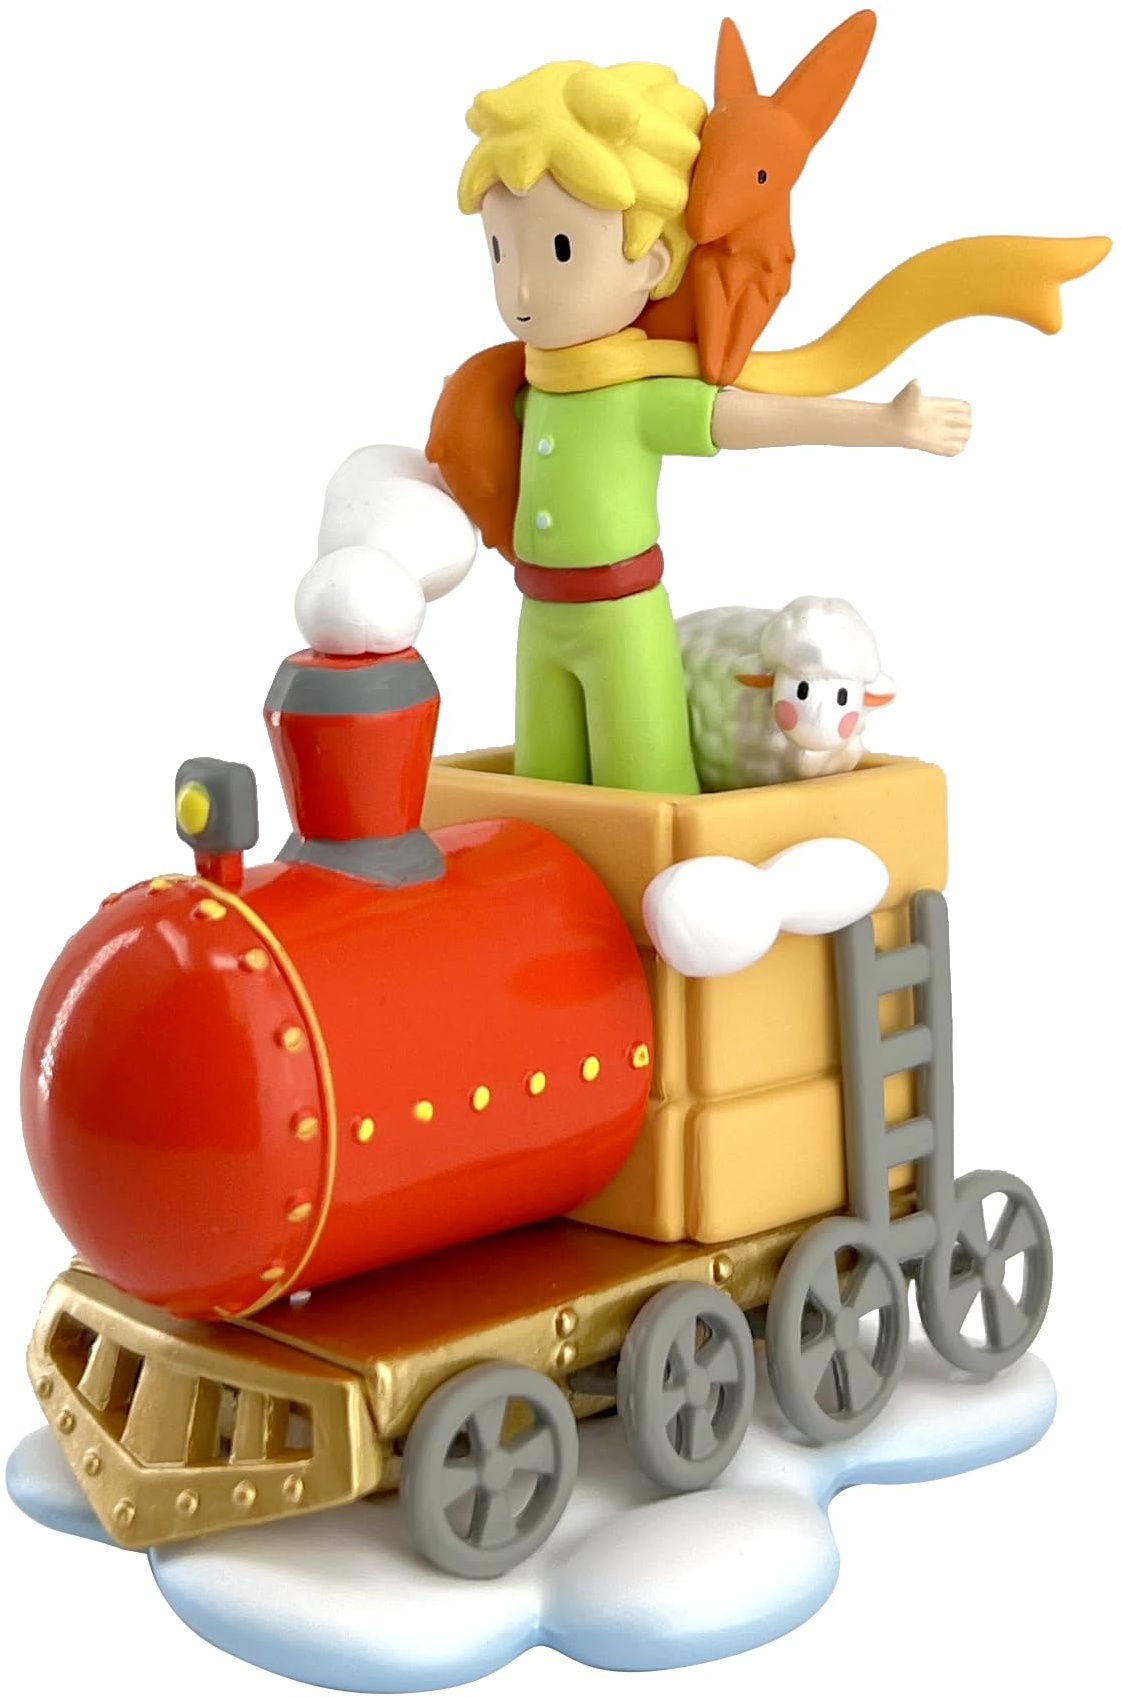 Plastoy SAS PLA40455 Little Prince with His Friends on The Train Der Kleine Prinz mit seinen Freunden im Zug